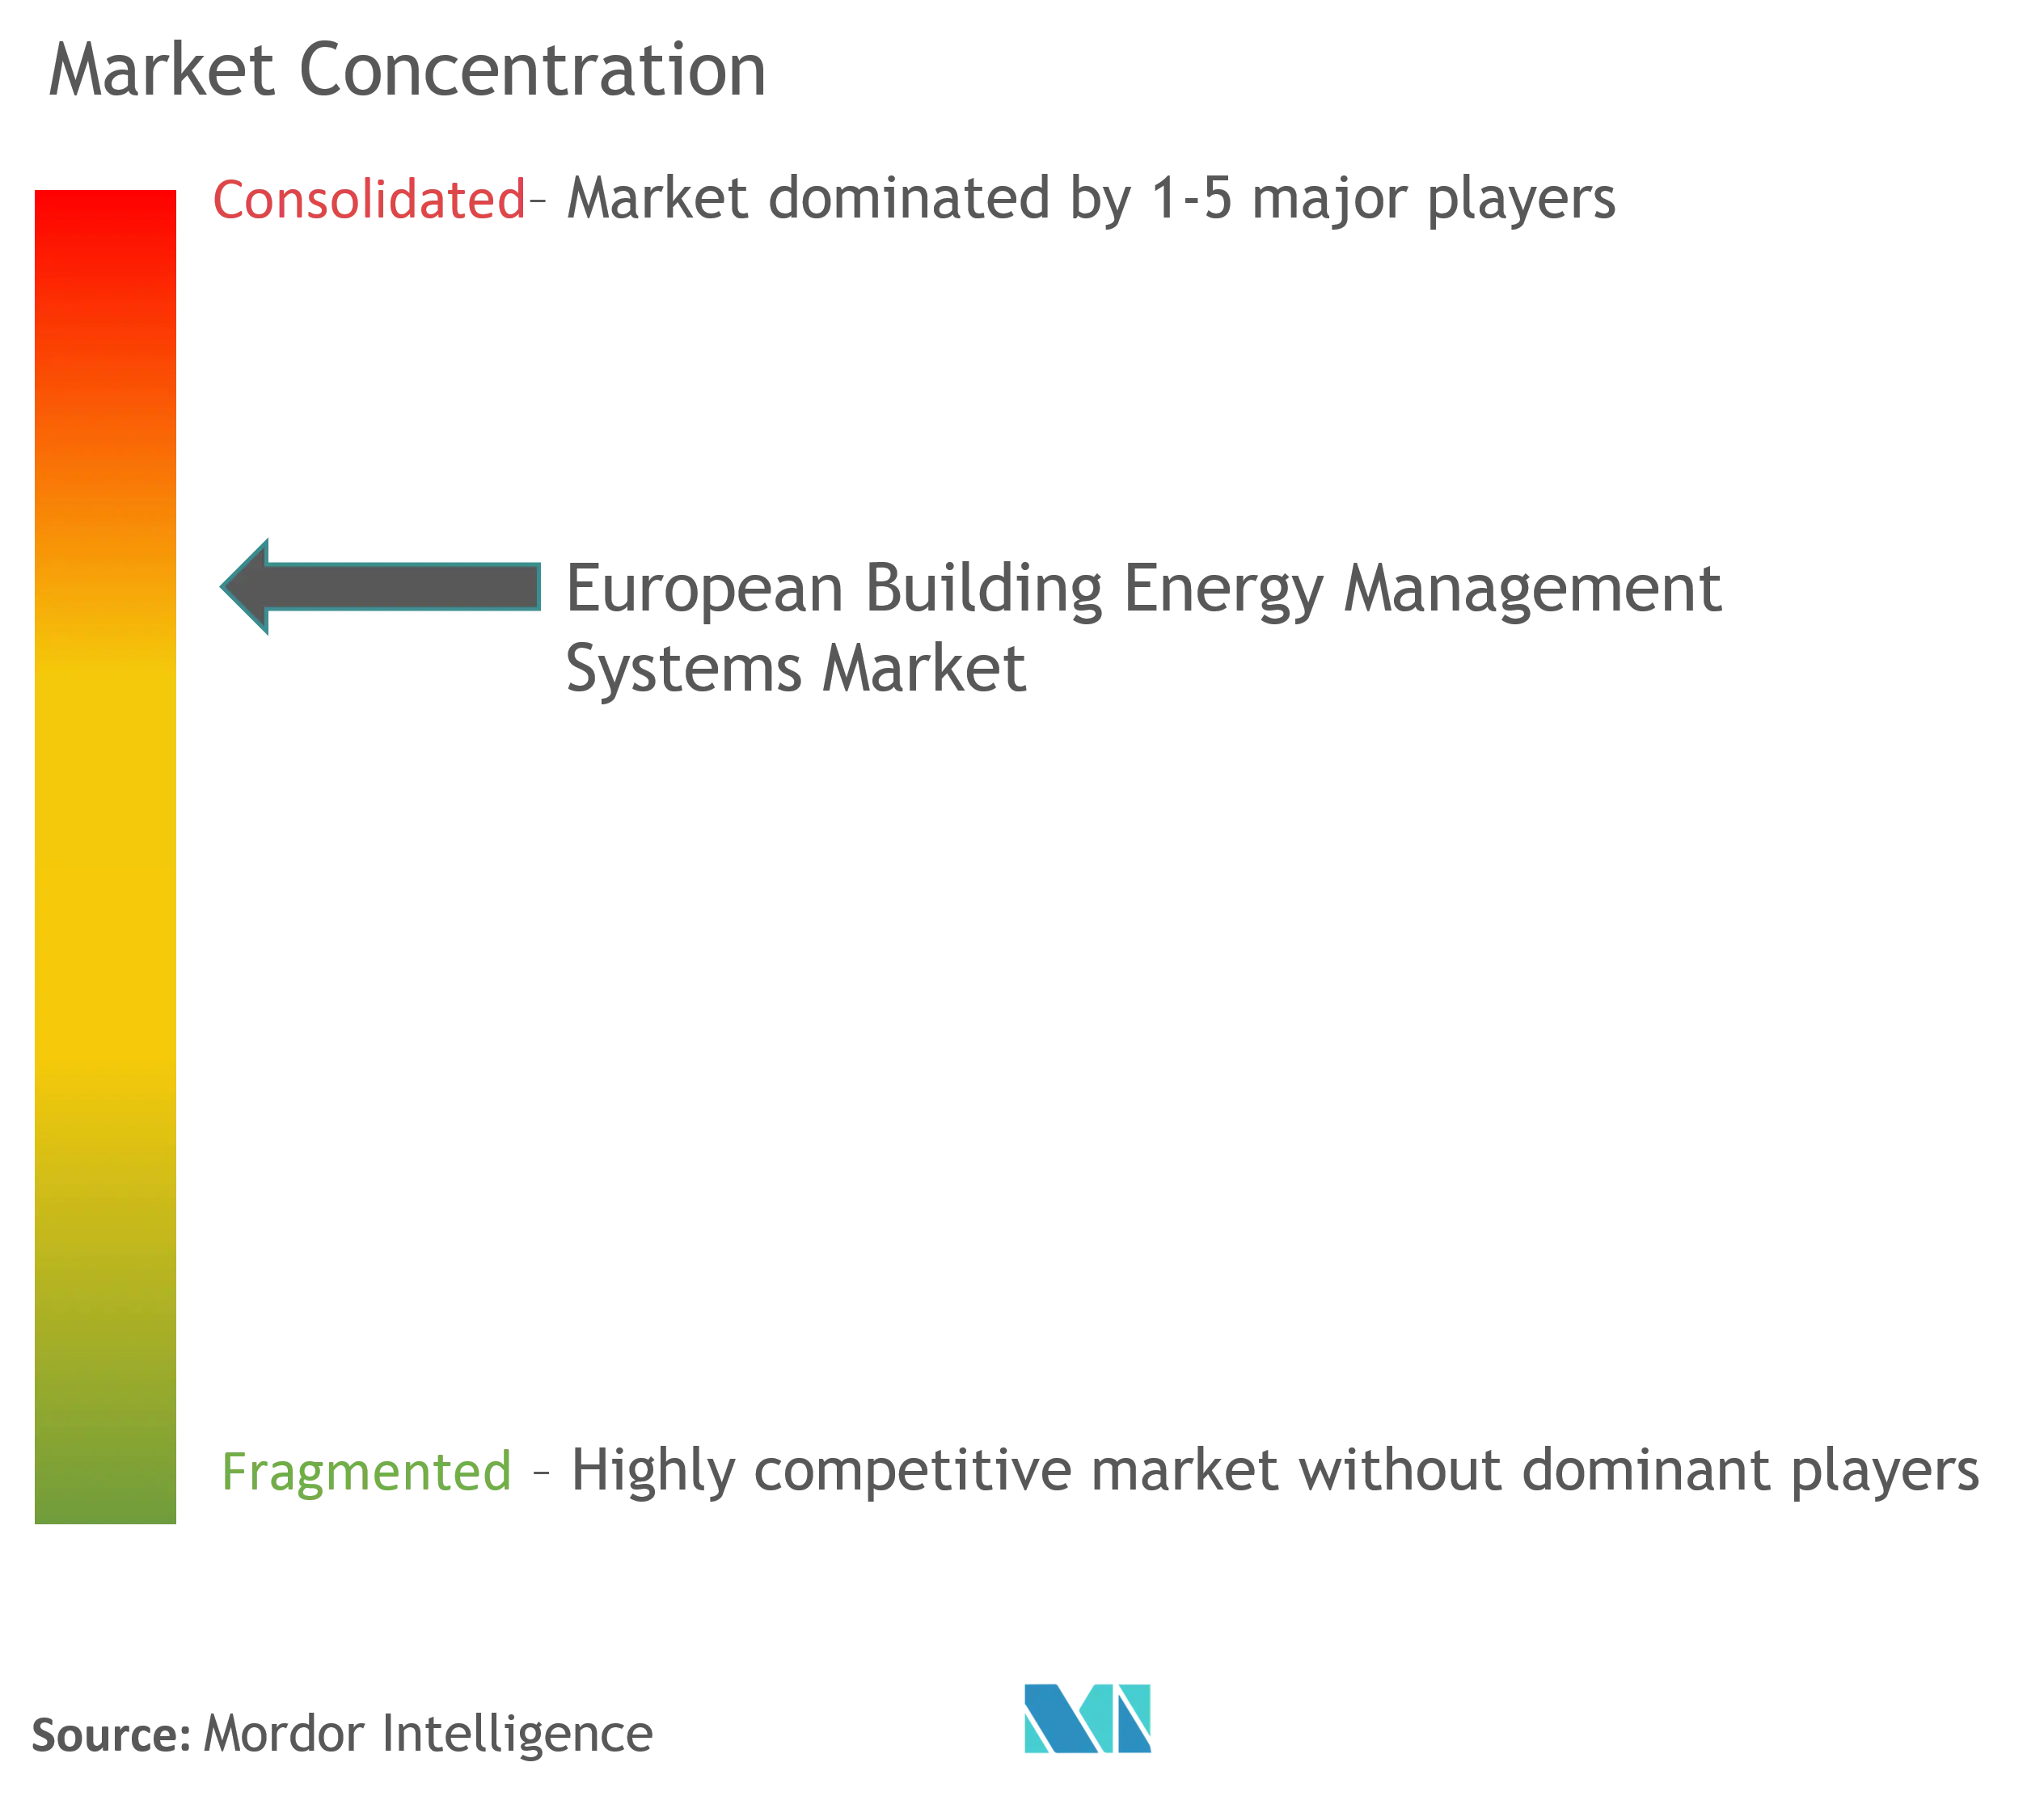 Châu Âu Xây dựng Hệ thống Quản lý Năng lượng Tập trung Thị trường